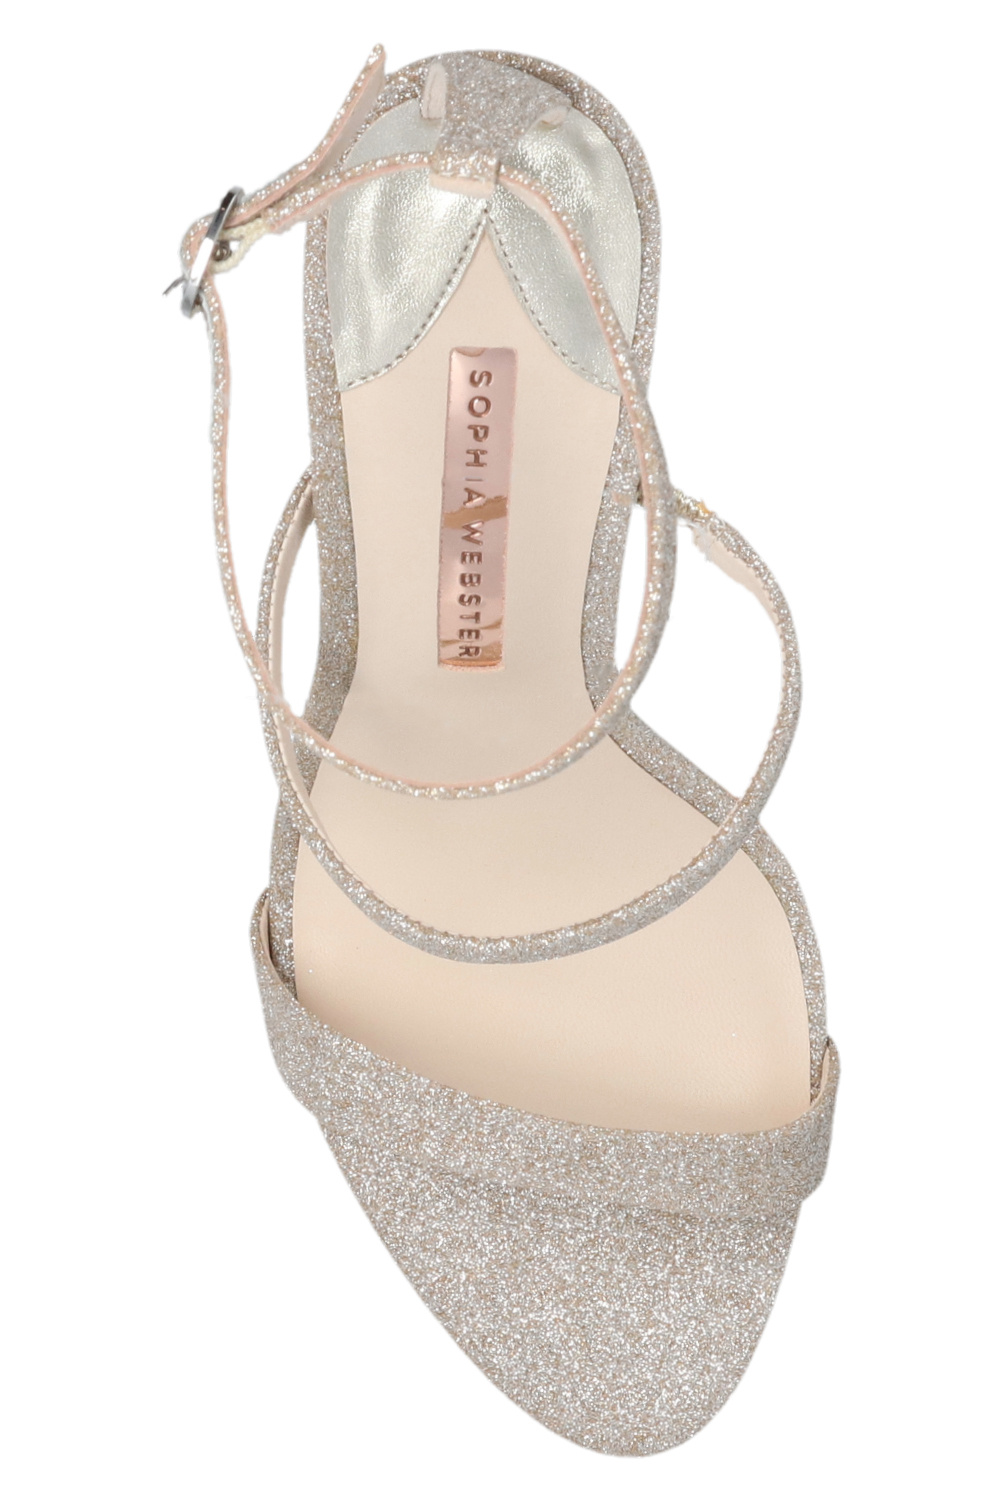 Sophia Webster ‘Rosalind’ heeled Officine sandals